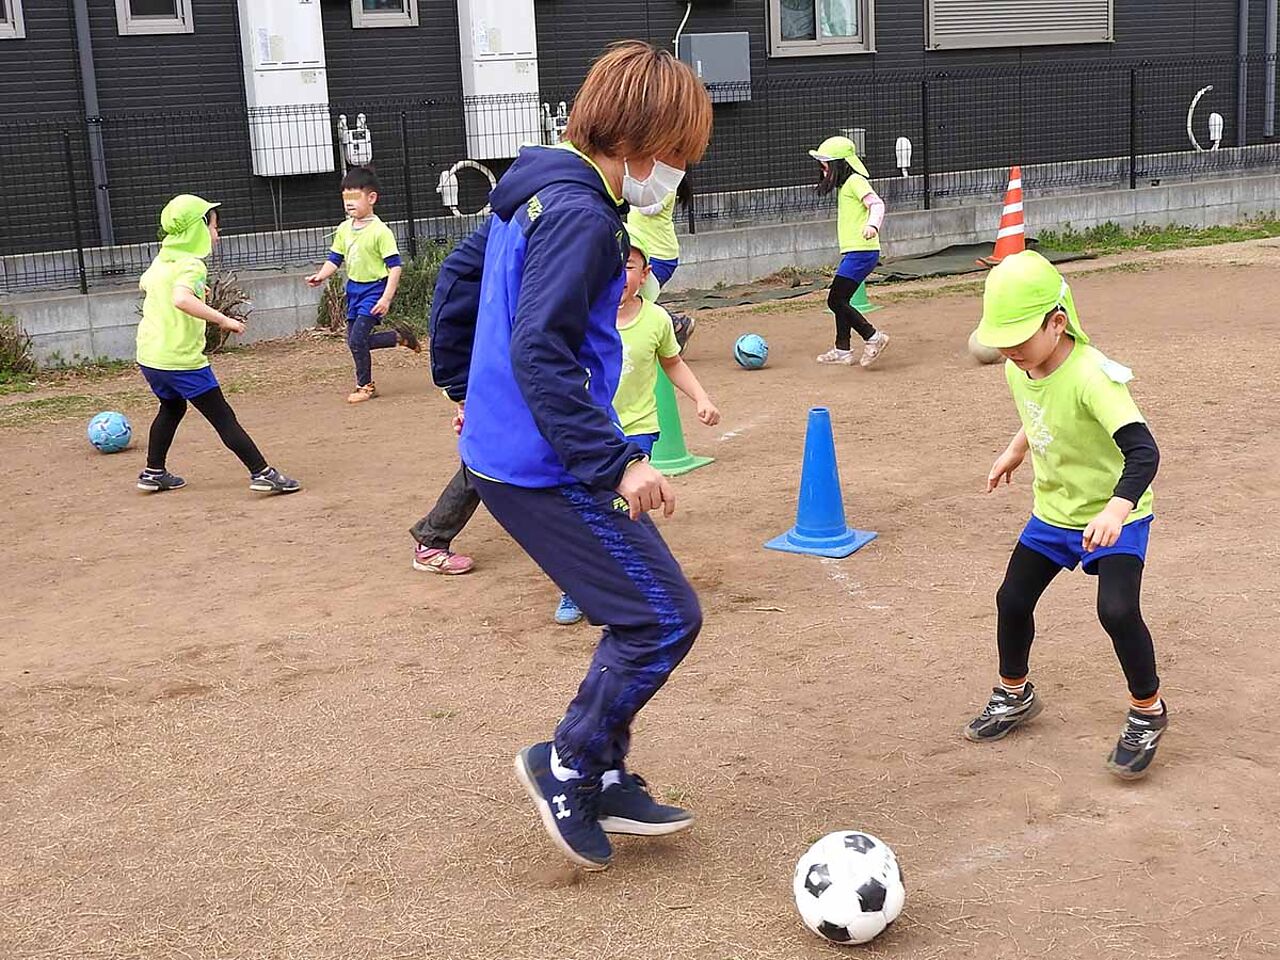 保育園の子どもたちとサッカーをしている様子が分かる画像